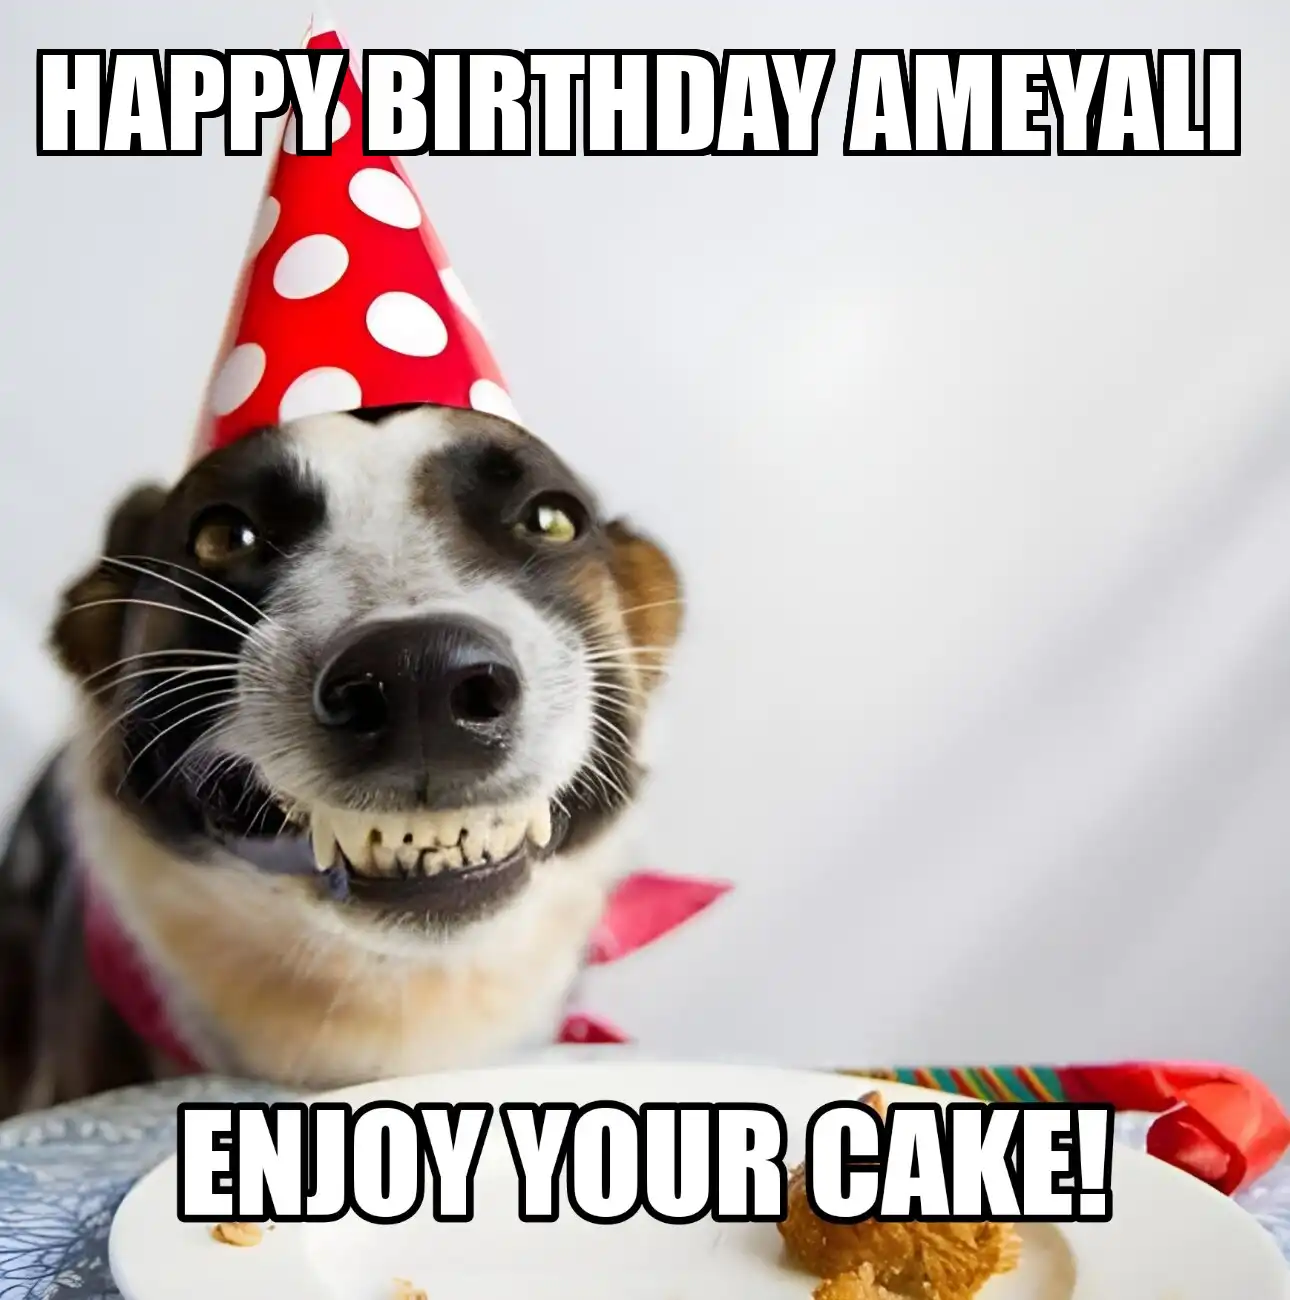 Happy Birthday Ameyali Enjoy Your Cake Dog Meme